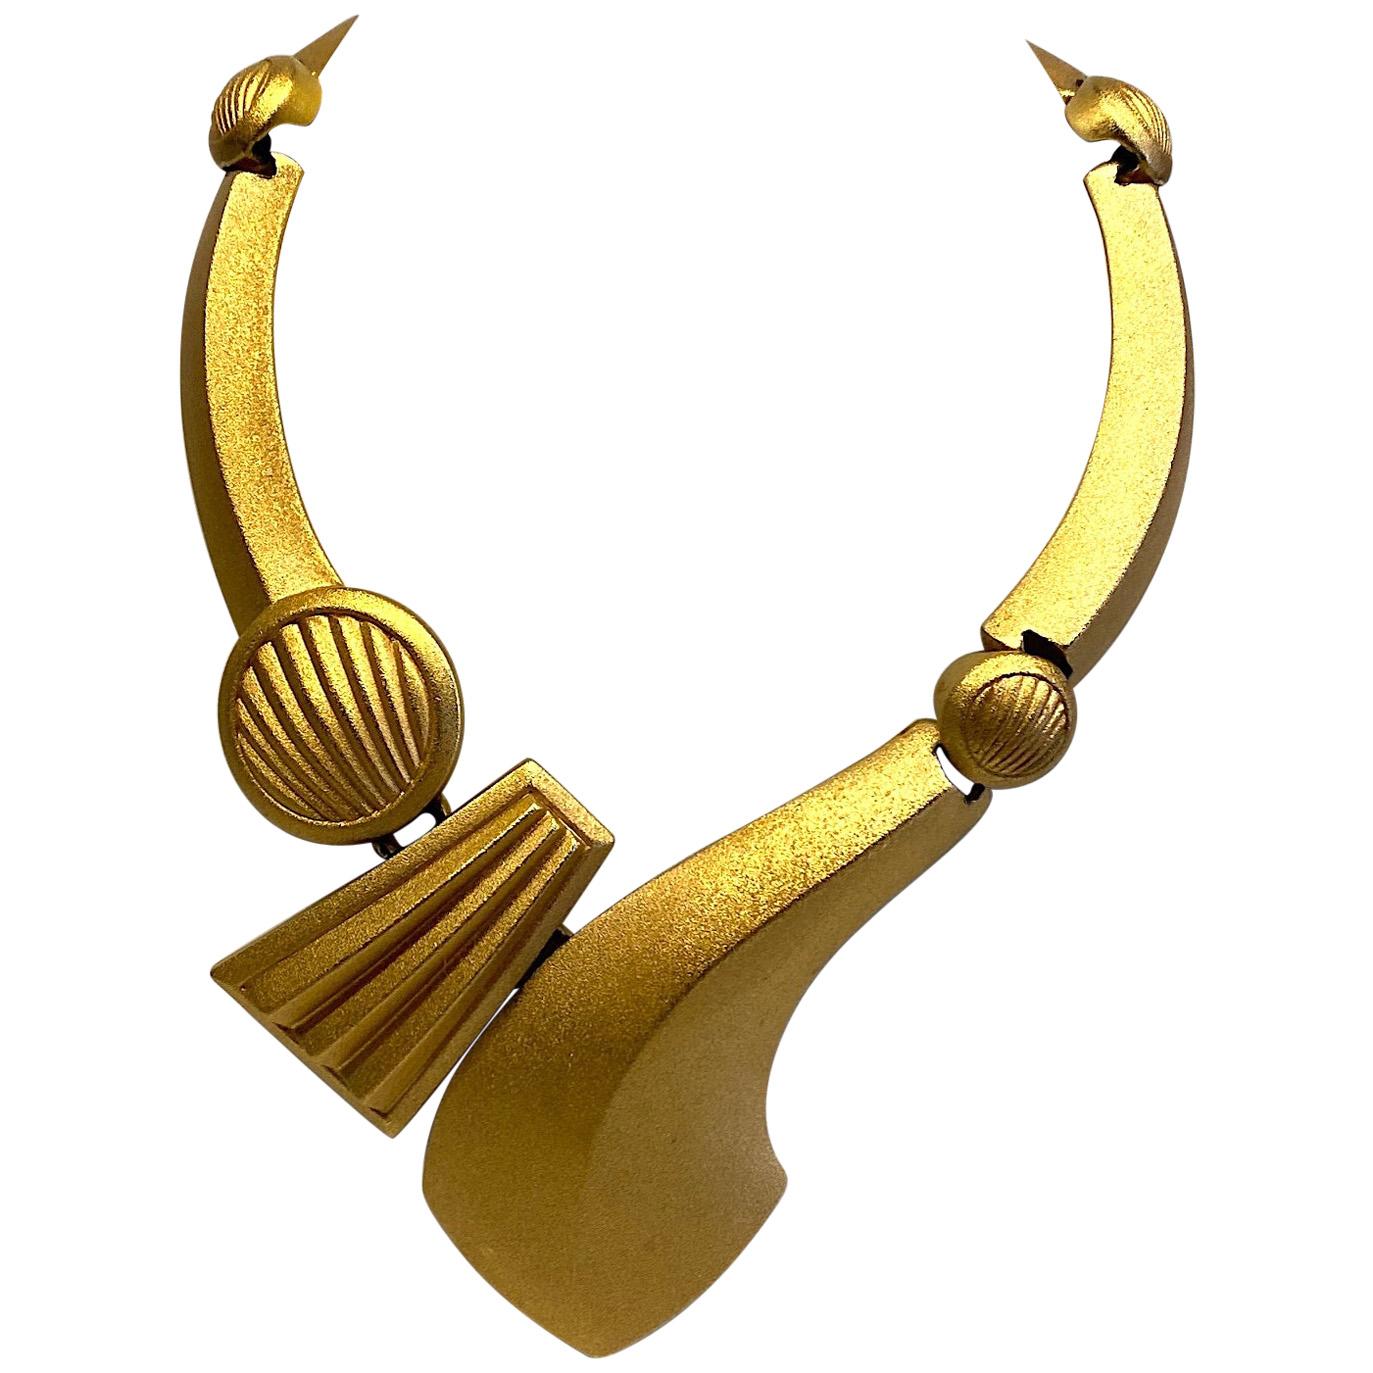 Details about   Vintage Gold-tone Monet Serpentine Chain Necklace mint condition! 